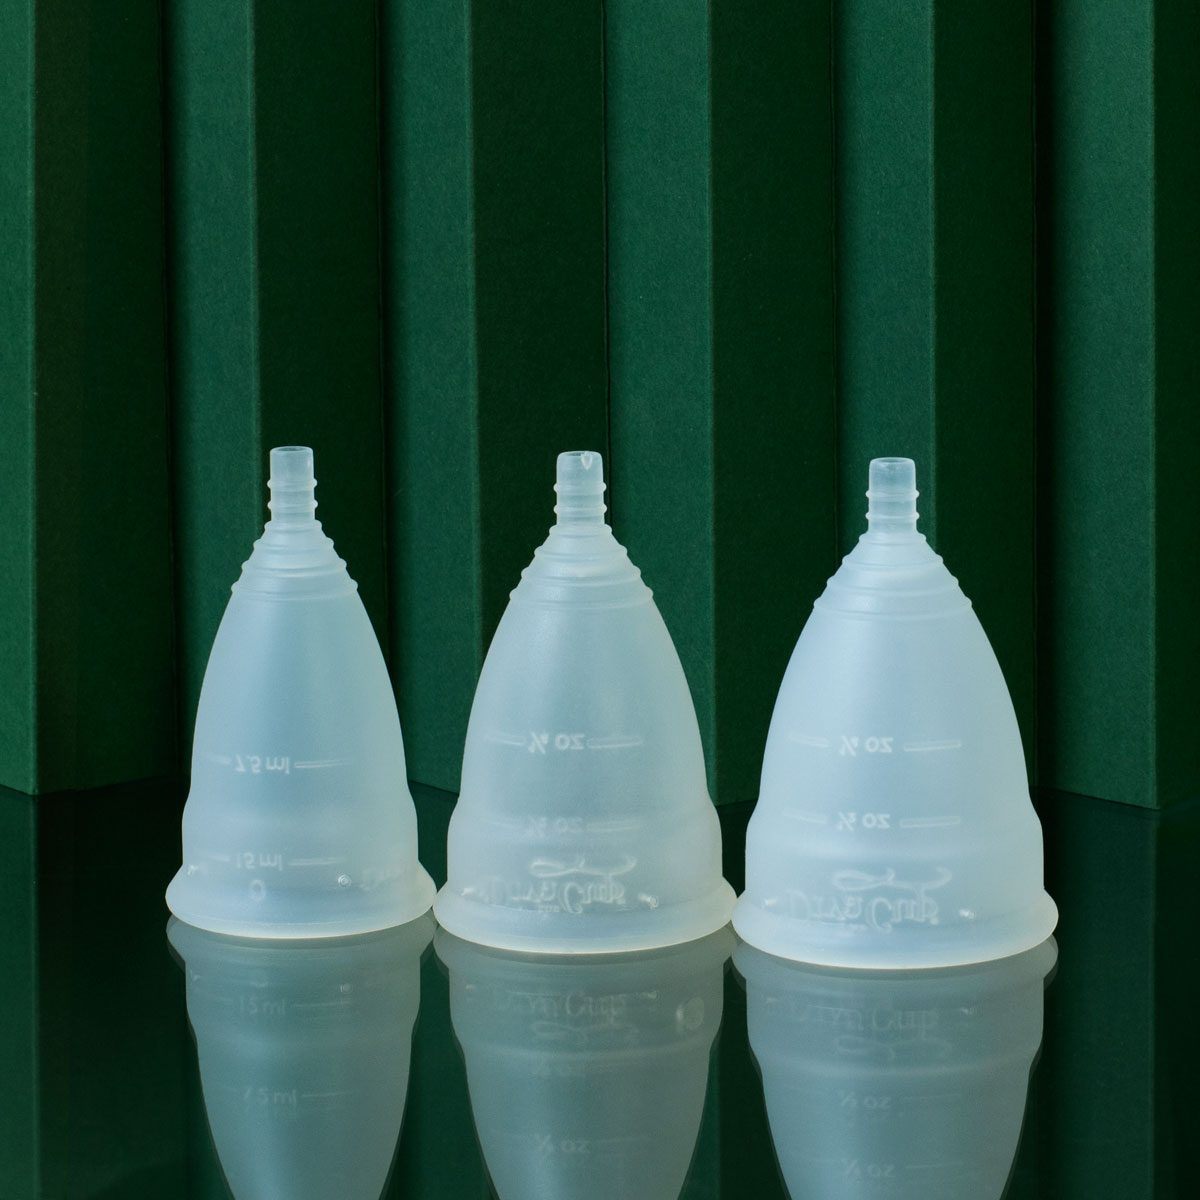 side by side comparison of Divacup Model 0, Model, 1 Model 2 size menstrual cups